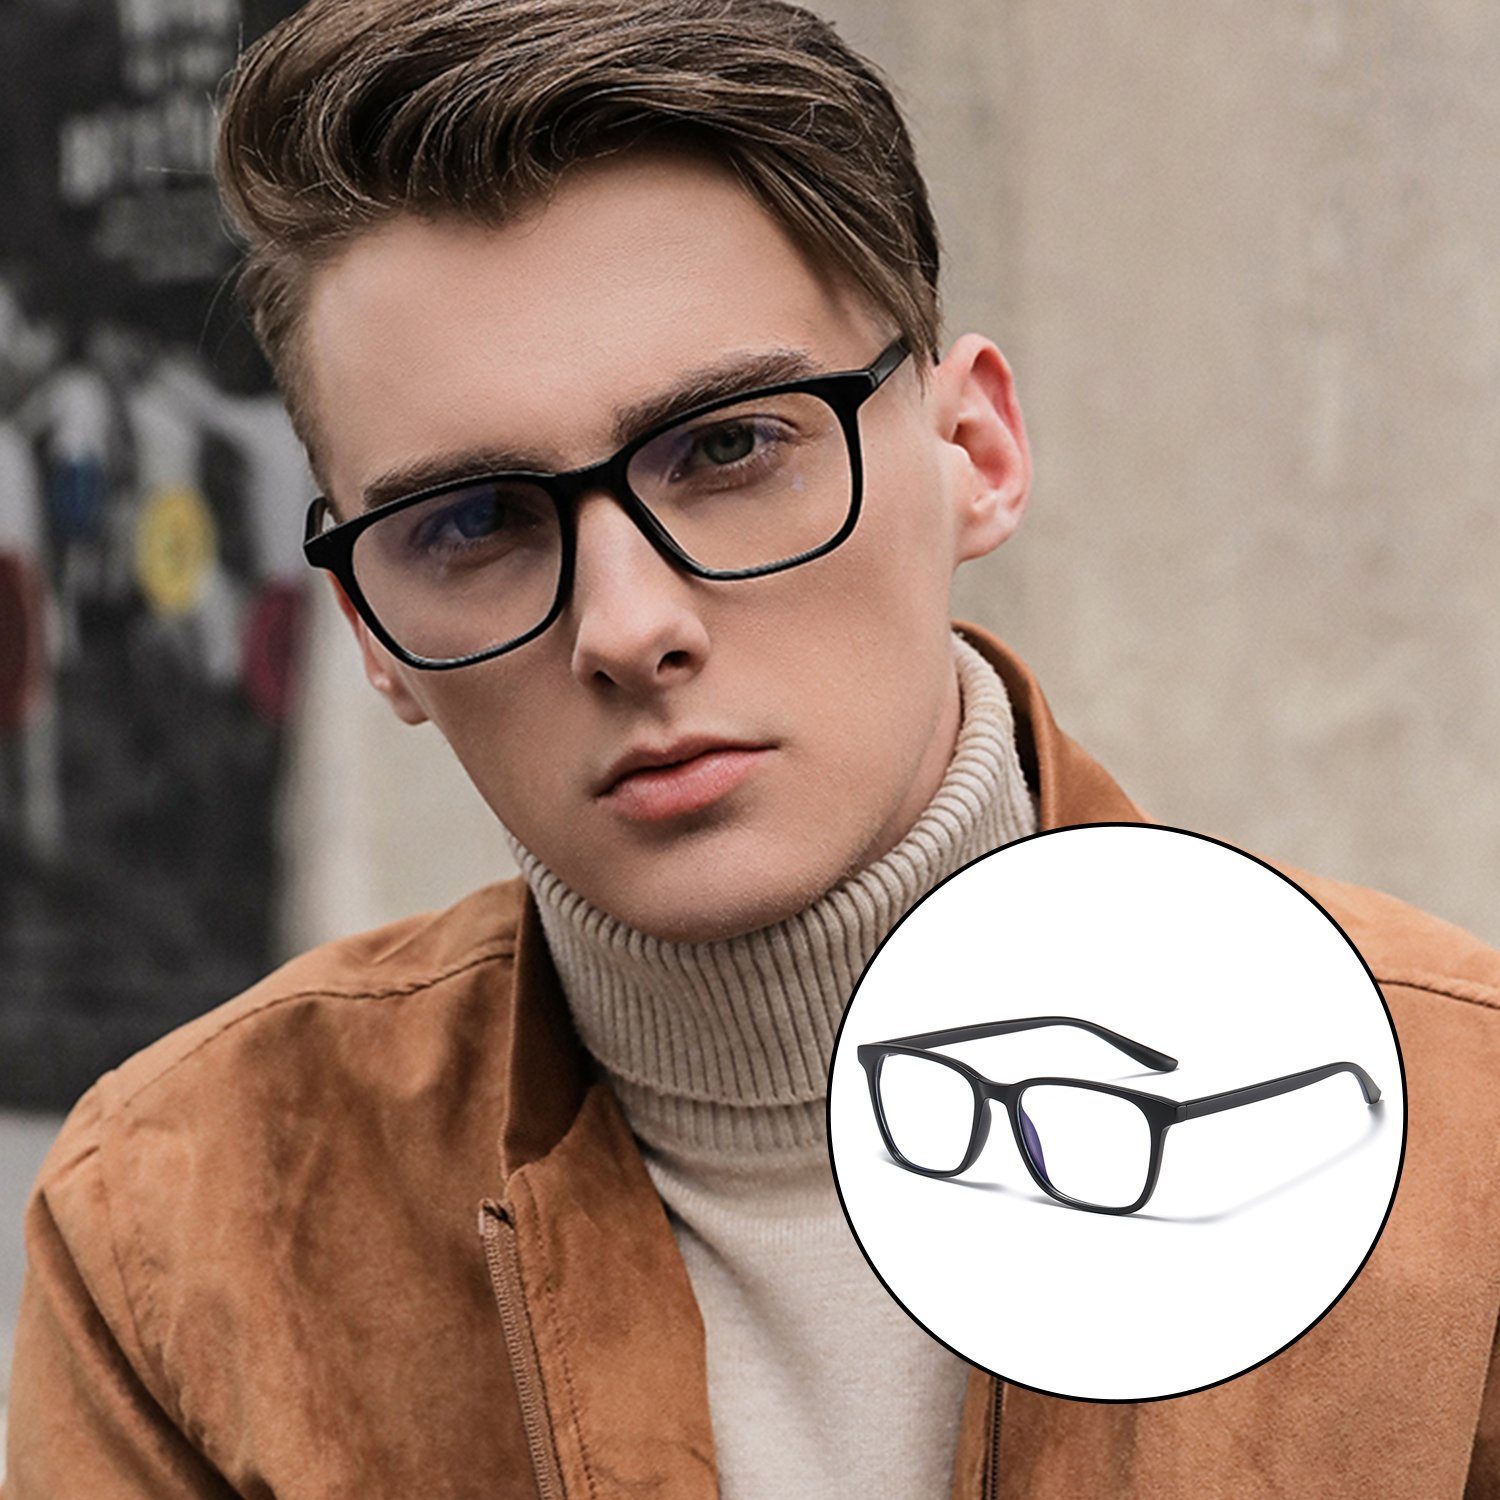 Sehstärke BlendschutzBlaulicht-Schutzbrillen Schwarz Retro MAGICSHE ohne Lesebrille Blendschutz